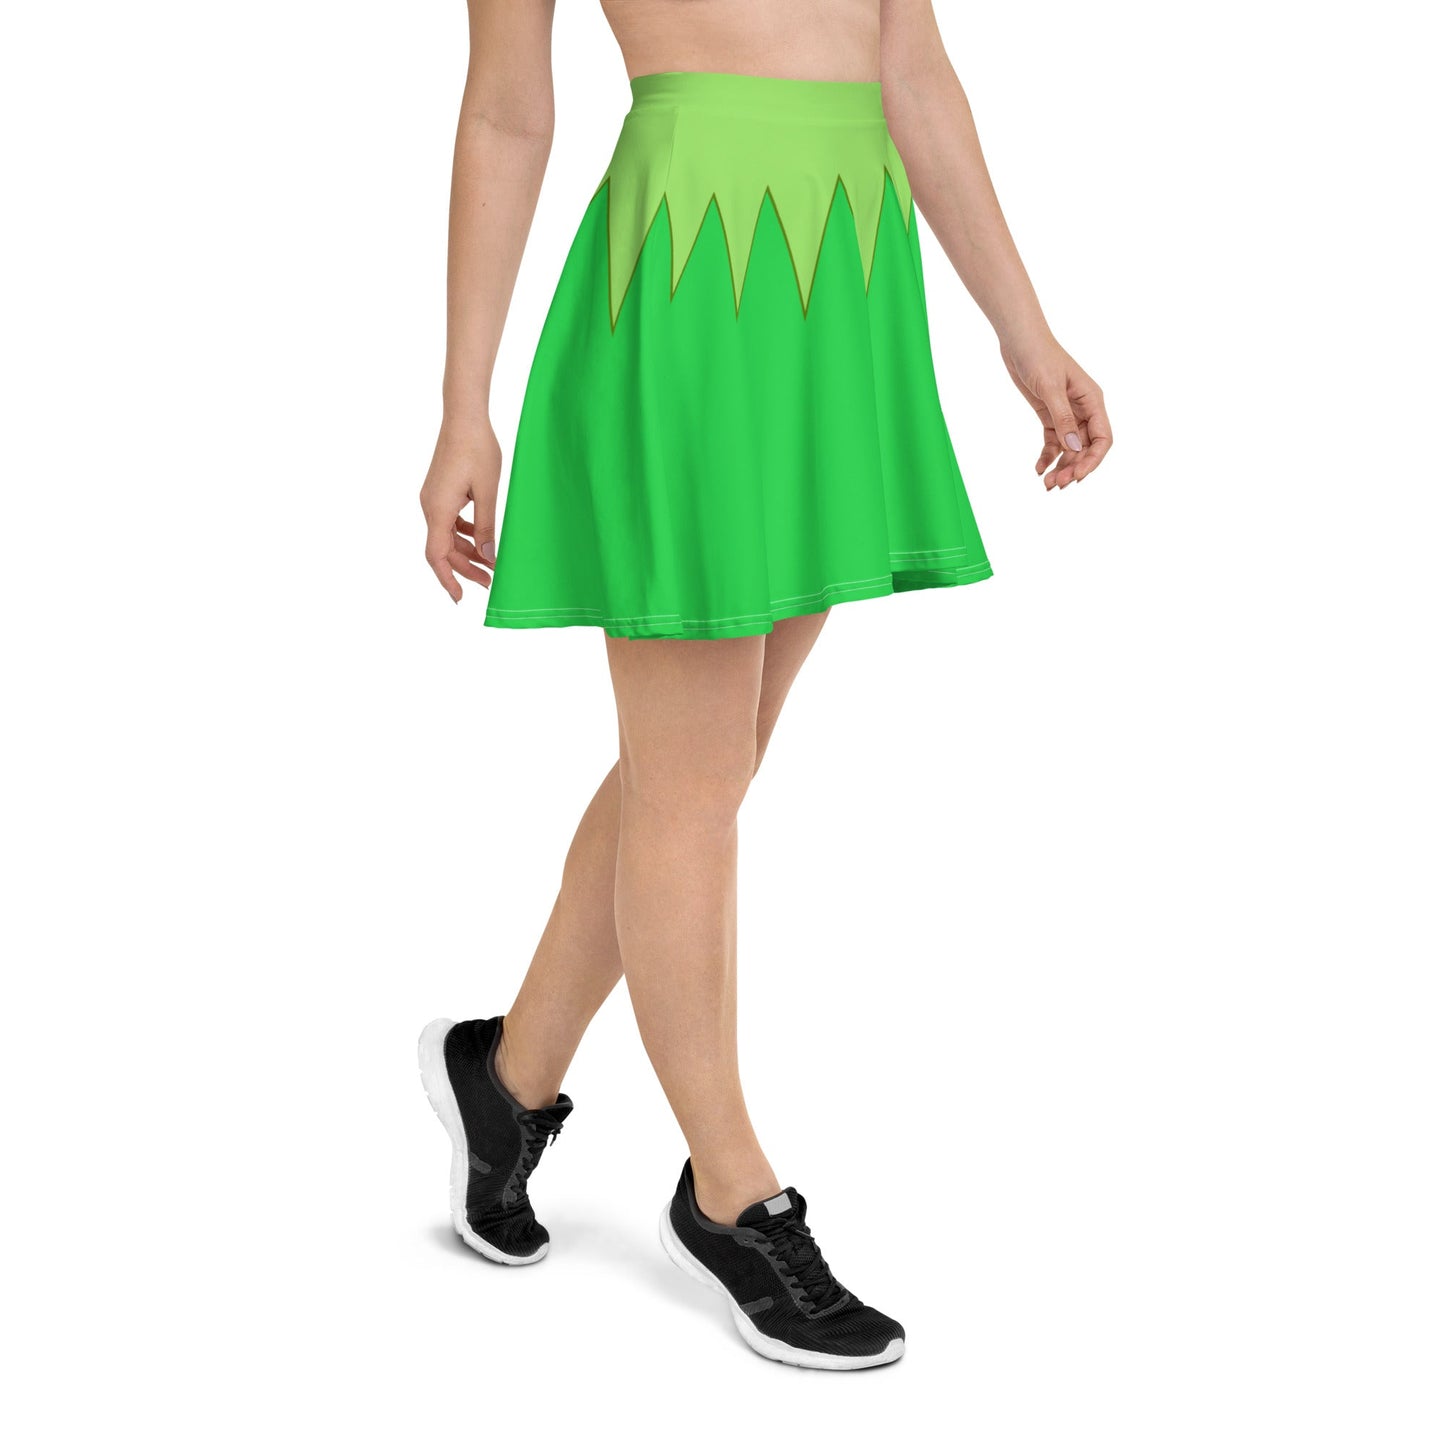 Green Frog Puppet Skater Skirt disney boundingdisney cosplayWrong Lever Clothing